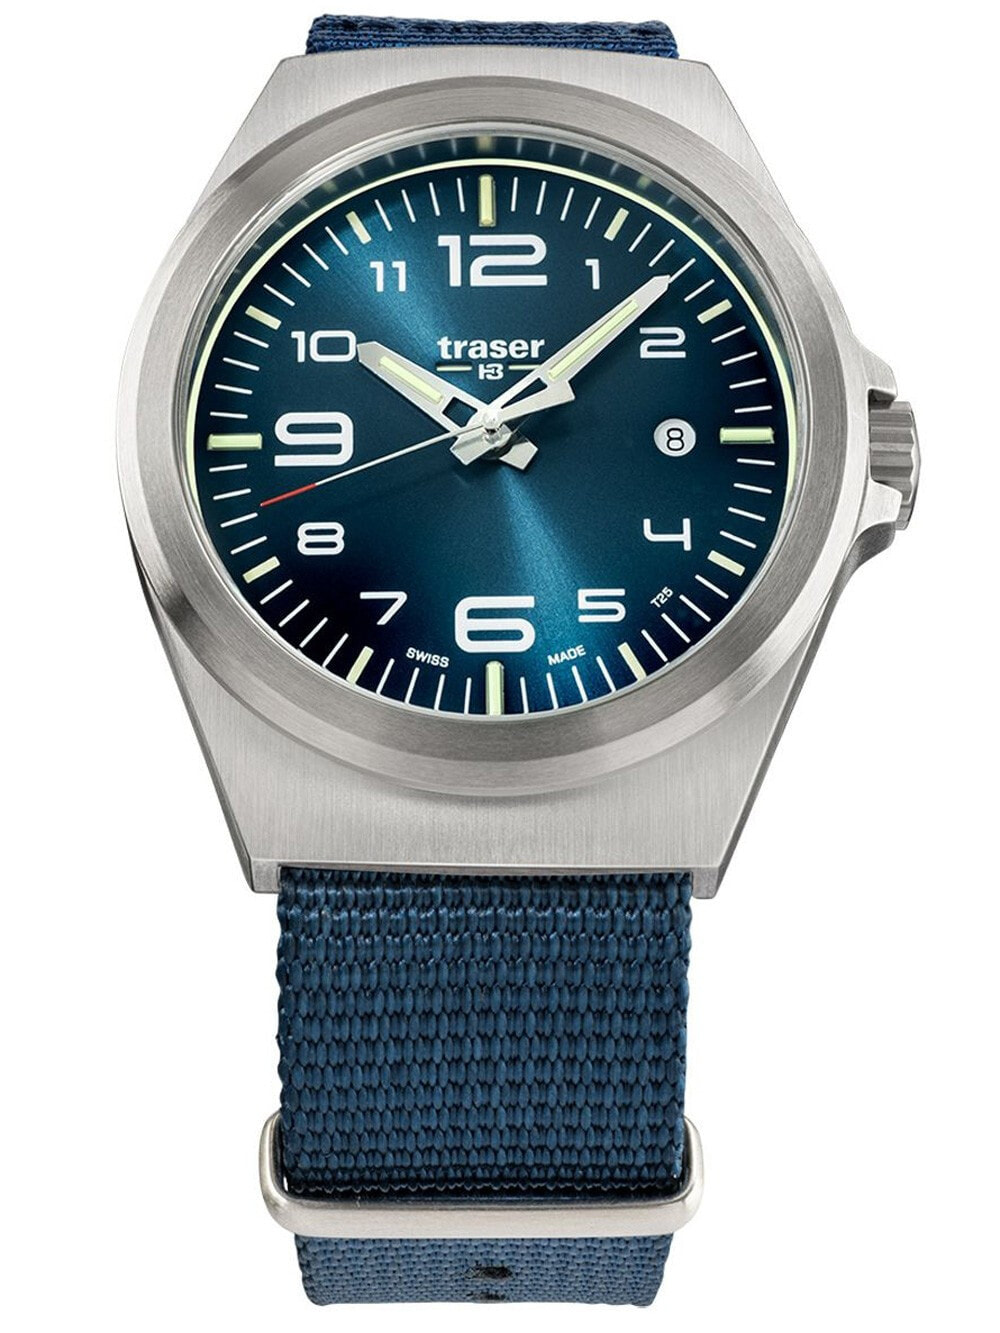 Мужские наручные часы с синим текстильным ремешком Traser H3 108216 P59 Esssential M Blue Mens 42mm 10ATM